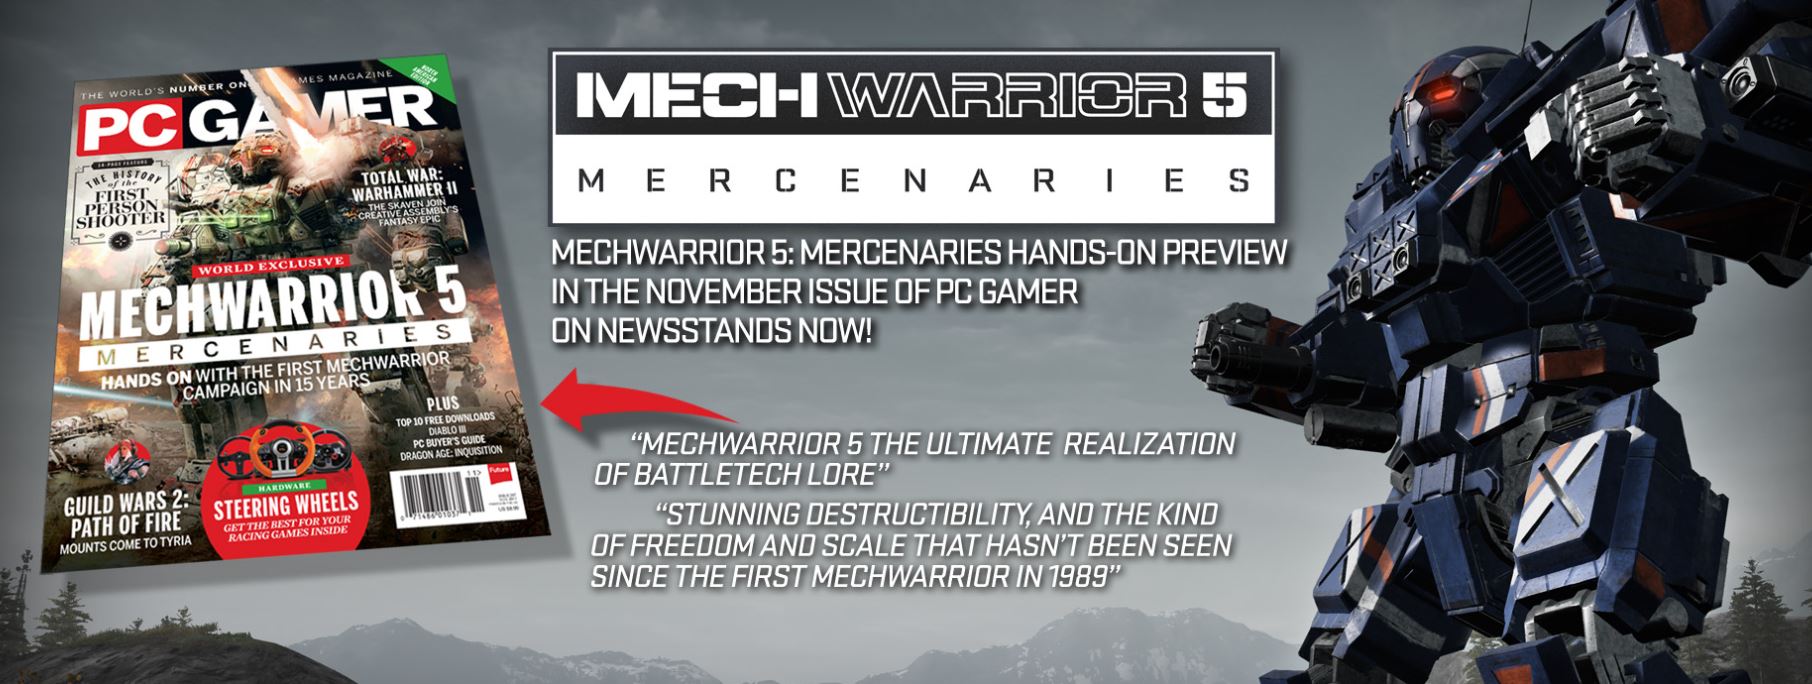 New Details Emerge For MechWarrior 5